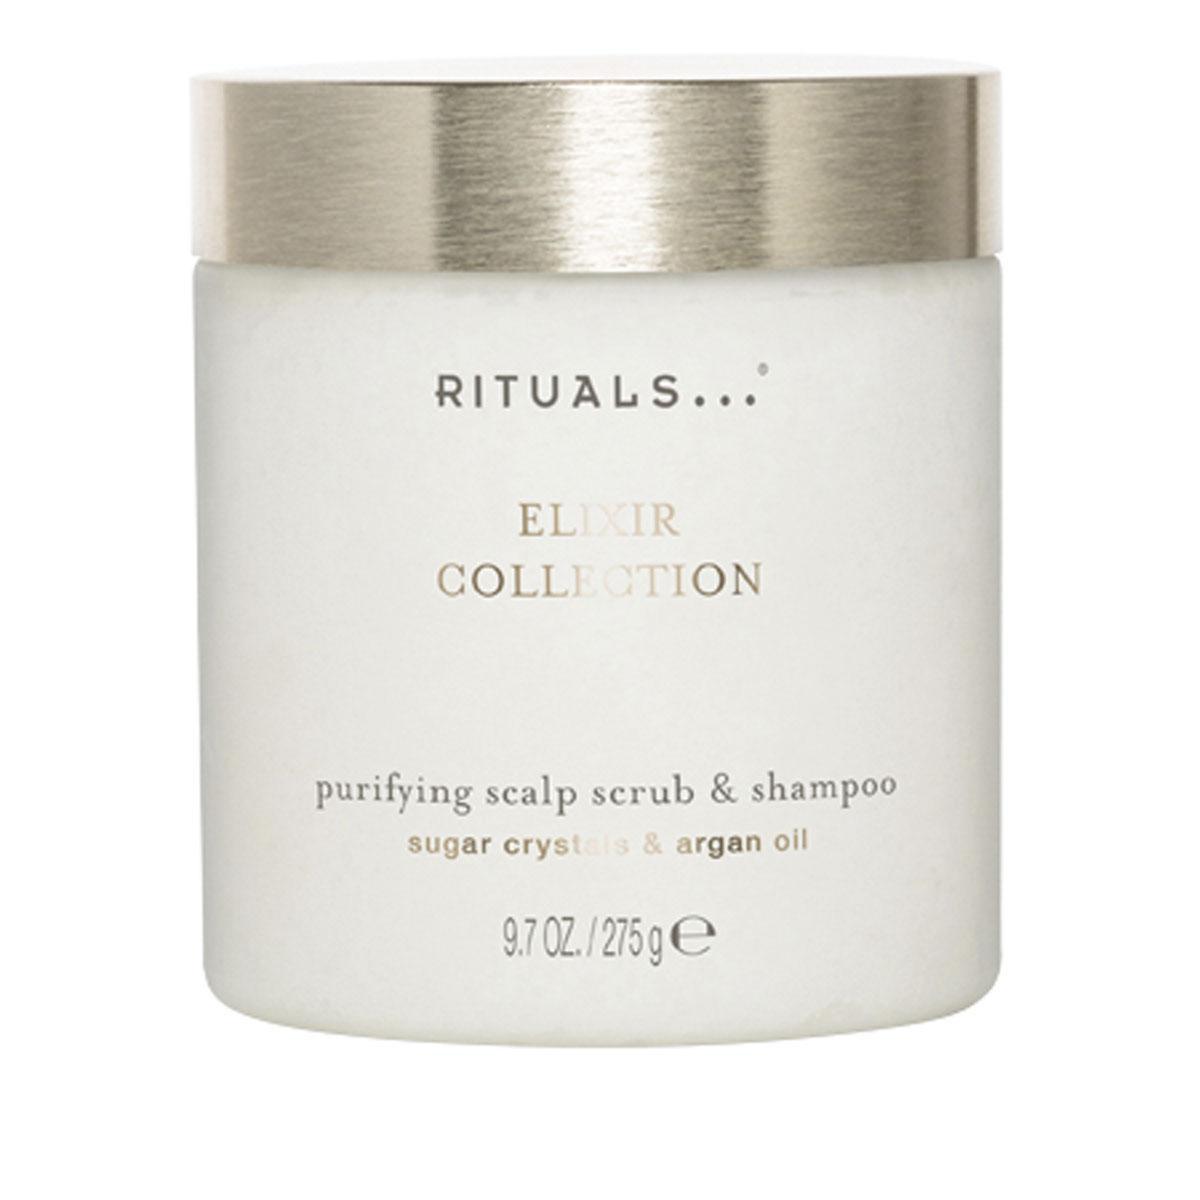 Purifying Scalp Scrub & Shampoo, Elixir Collection, Rituals, 18 euros les 275 g.